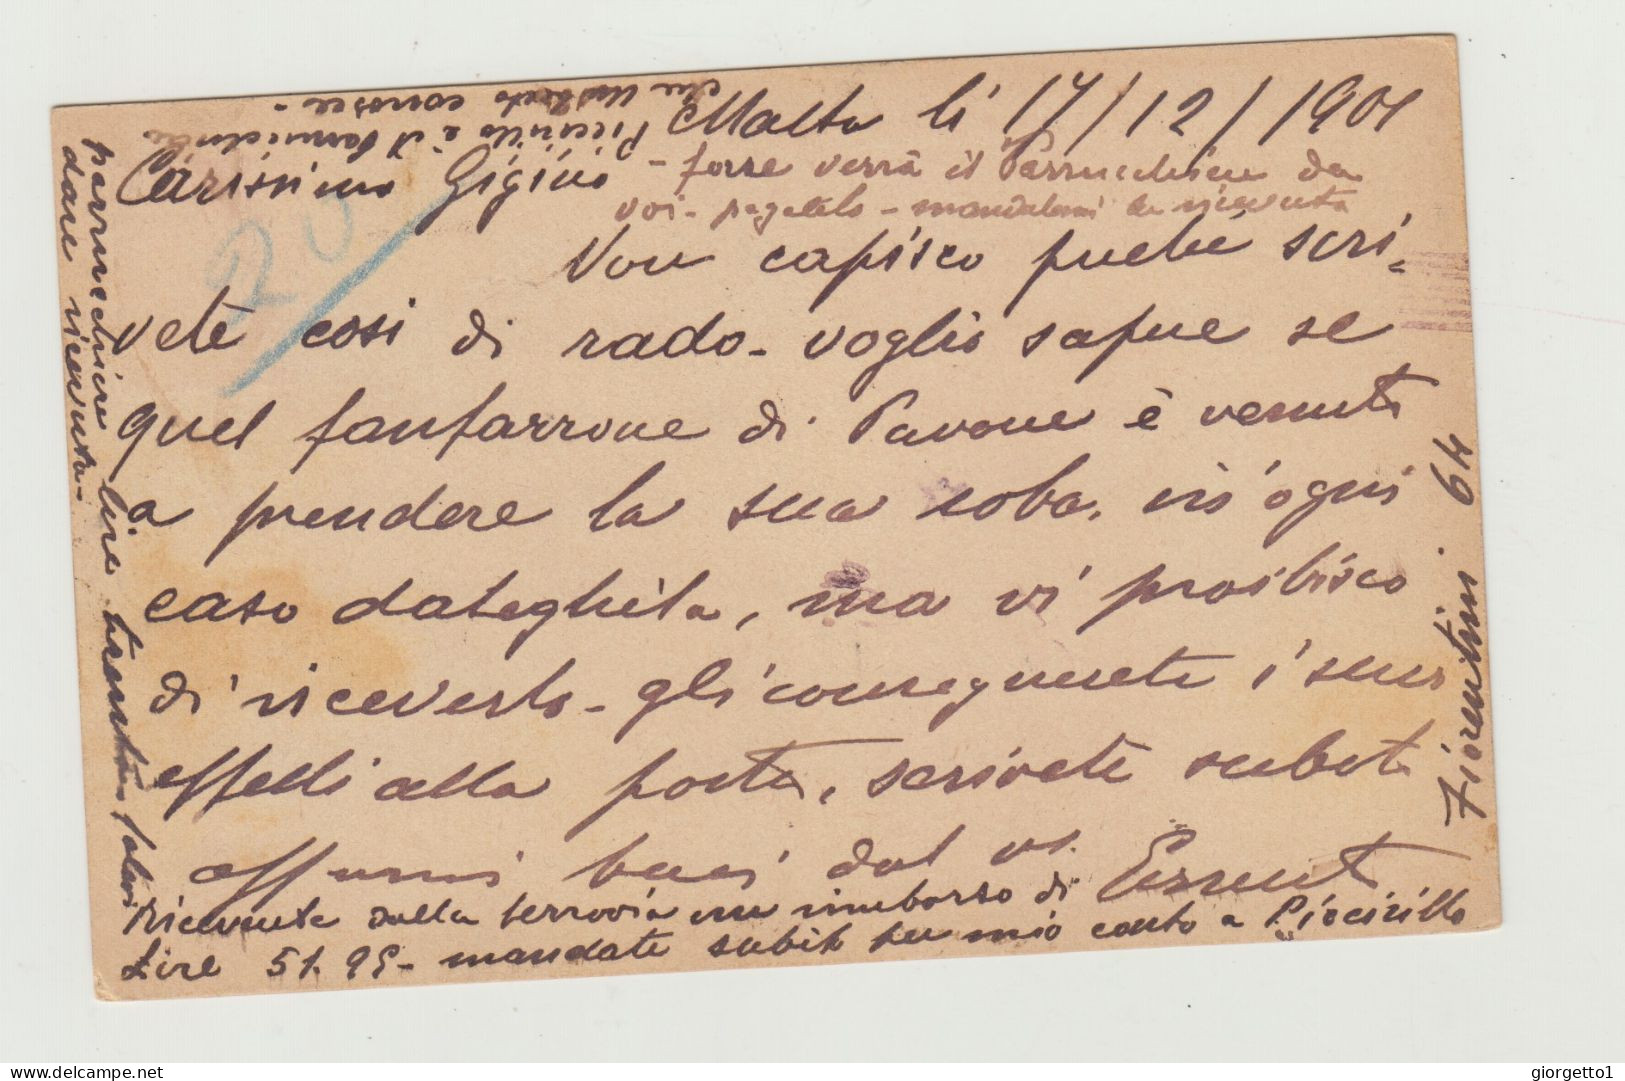 INTERO POSTALE DA 1 PENNY - MALTA - UNION POSTALE UNIVERSELLE DA MALTA VERSO ITALIA NEL 1901 - Marcofilie